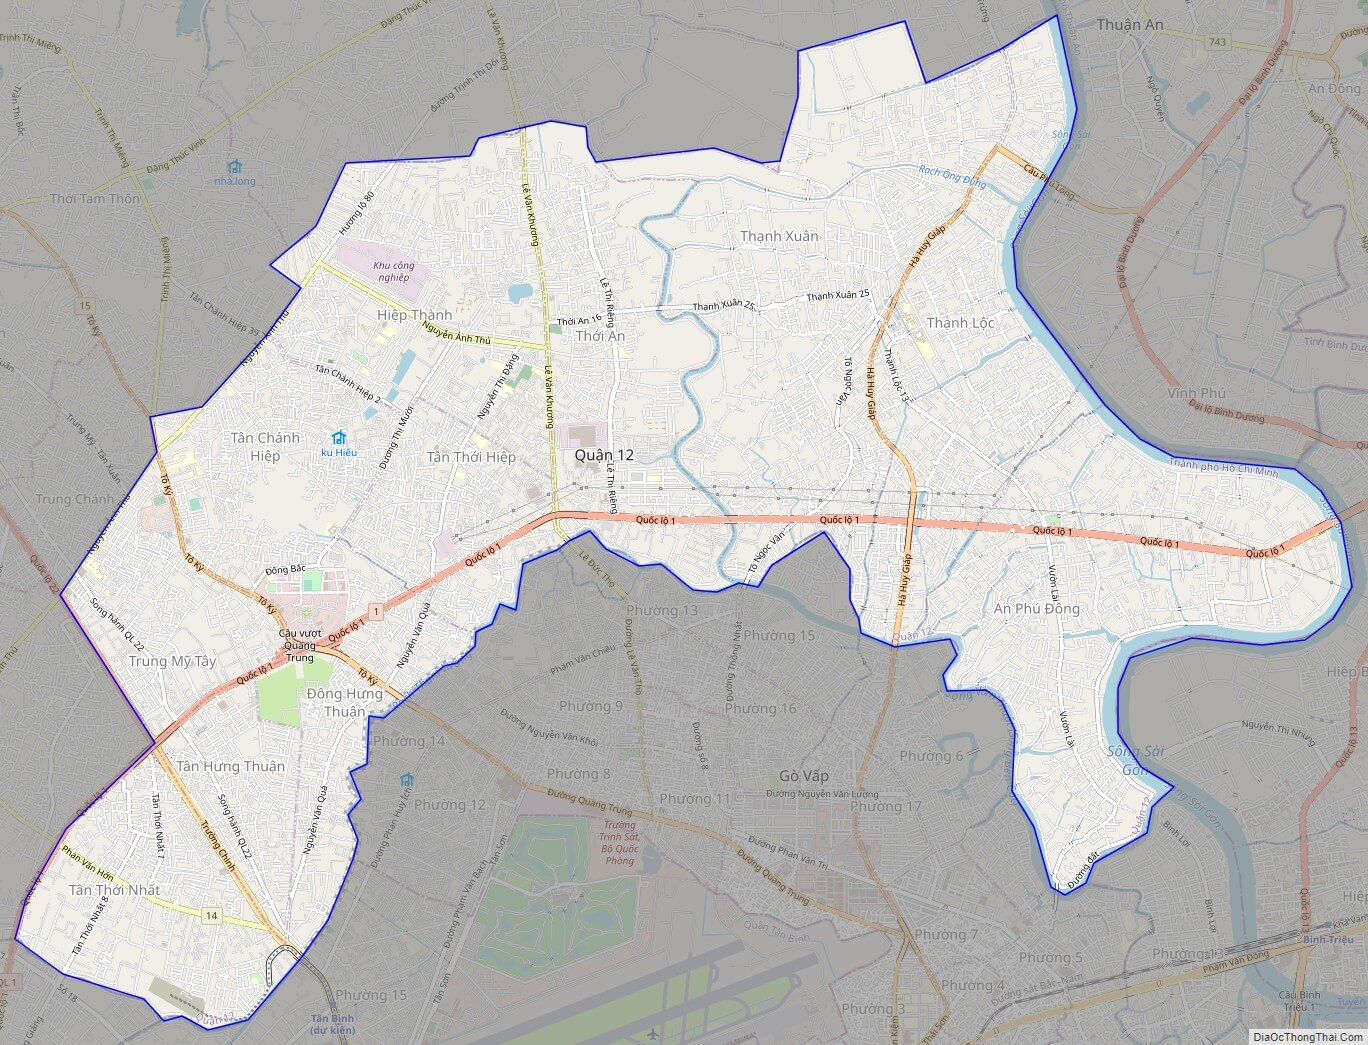 Bản đồ đất đai quận 12 Sài Gòn năm 2024 sẽ là một công cụ hữu ích để tìm kiếm nơi đóng cửa hàng, văn phòng hoặc kinh doanh. Với việc tăng cường quản lý đất đai, các khu đất sẽ trở nên quý giá và tạo ra cơ hội đầu tư lớn.